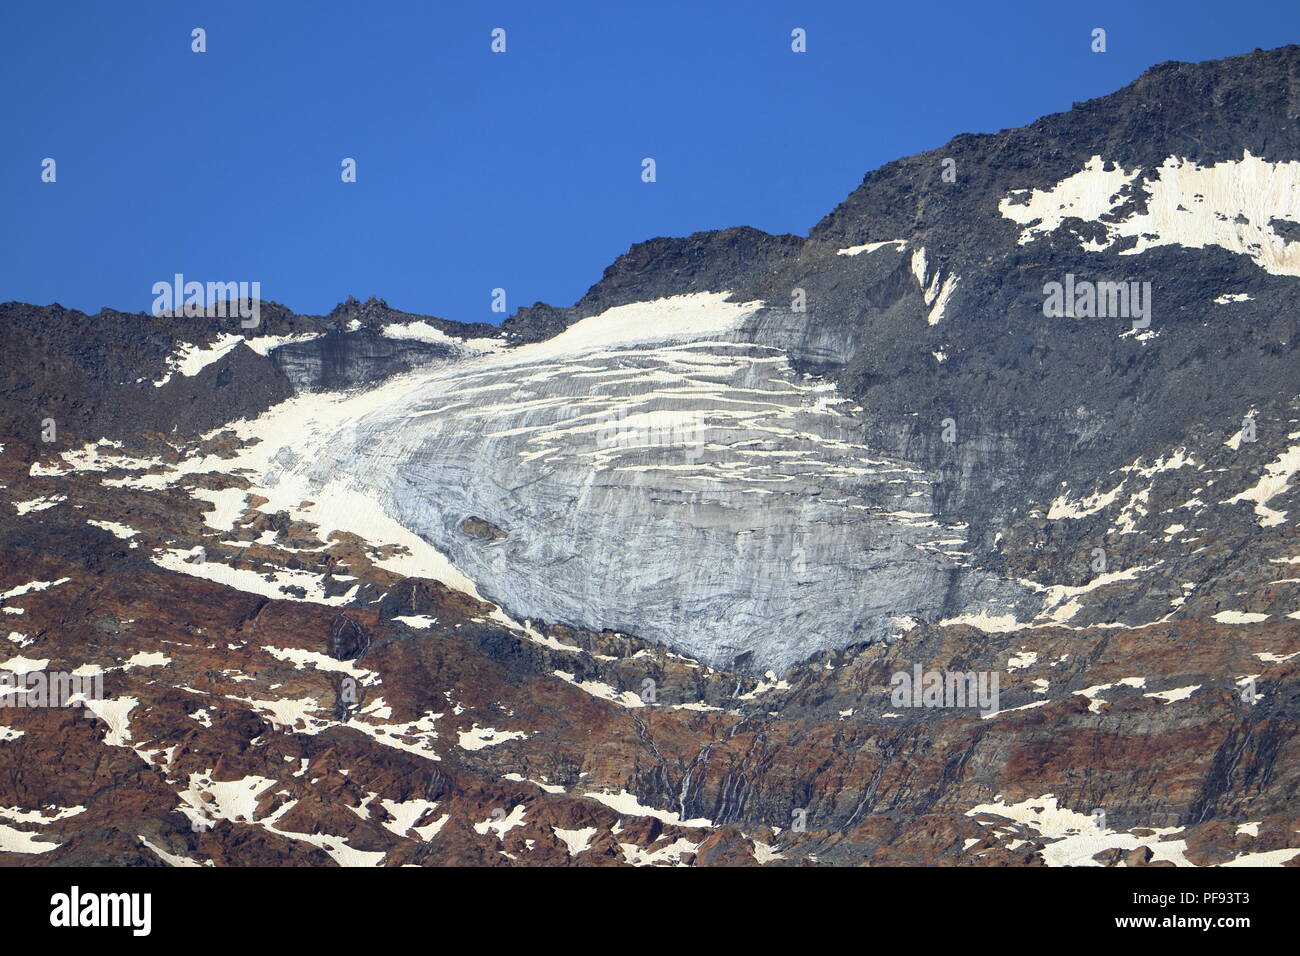 Gletschereis in der Nähe von Obergurgl, Ötztal in Tirol, Österreich. Stockfoto